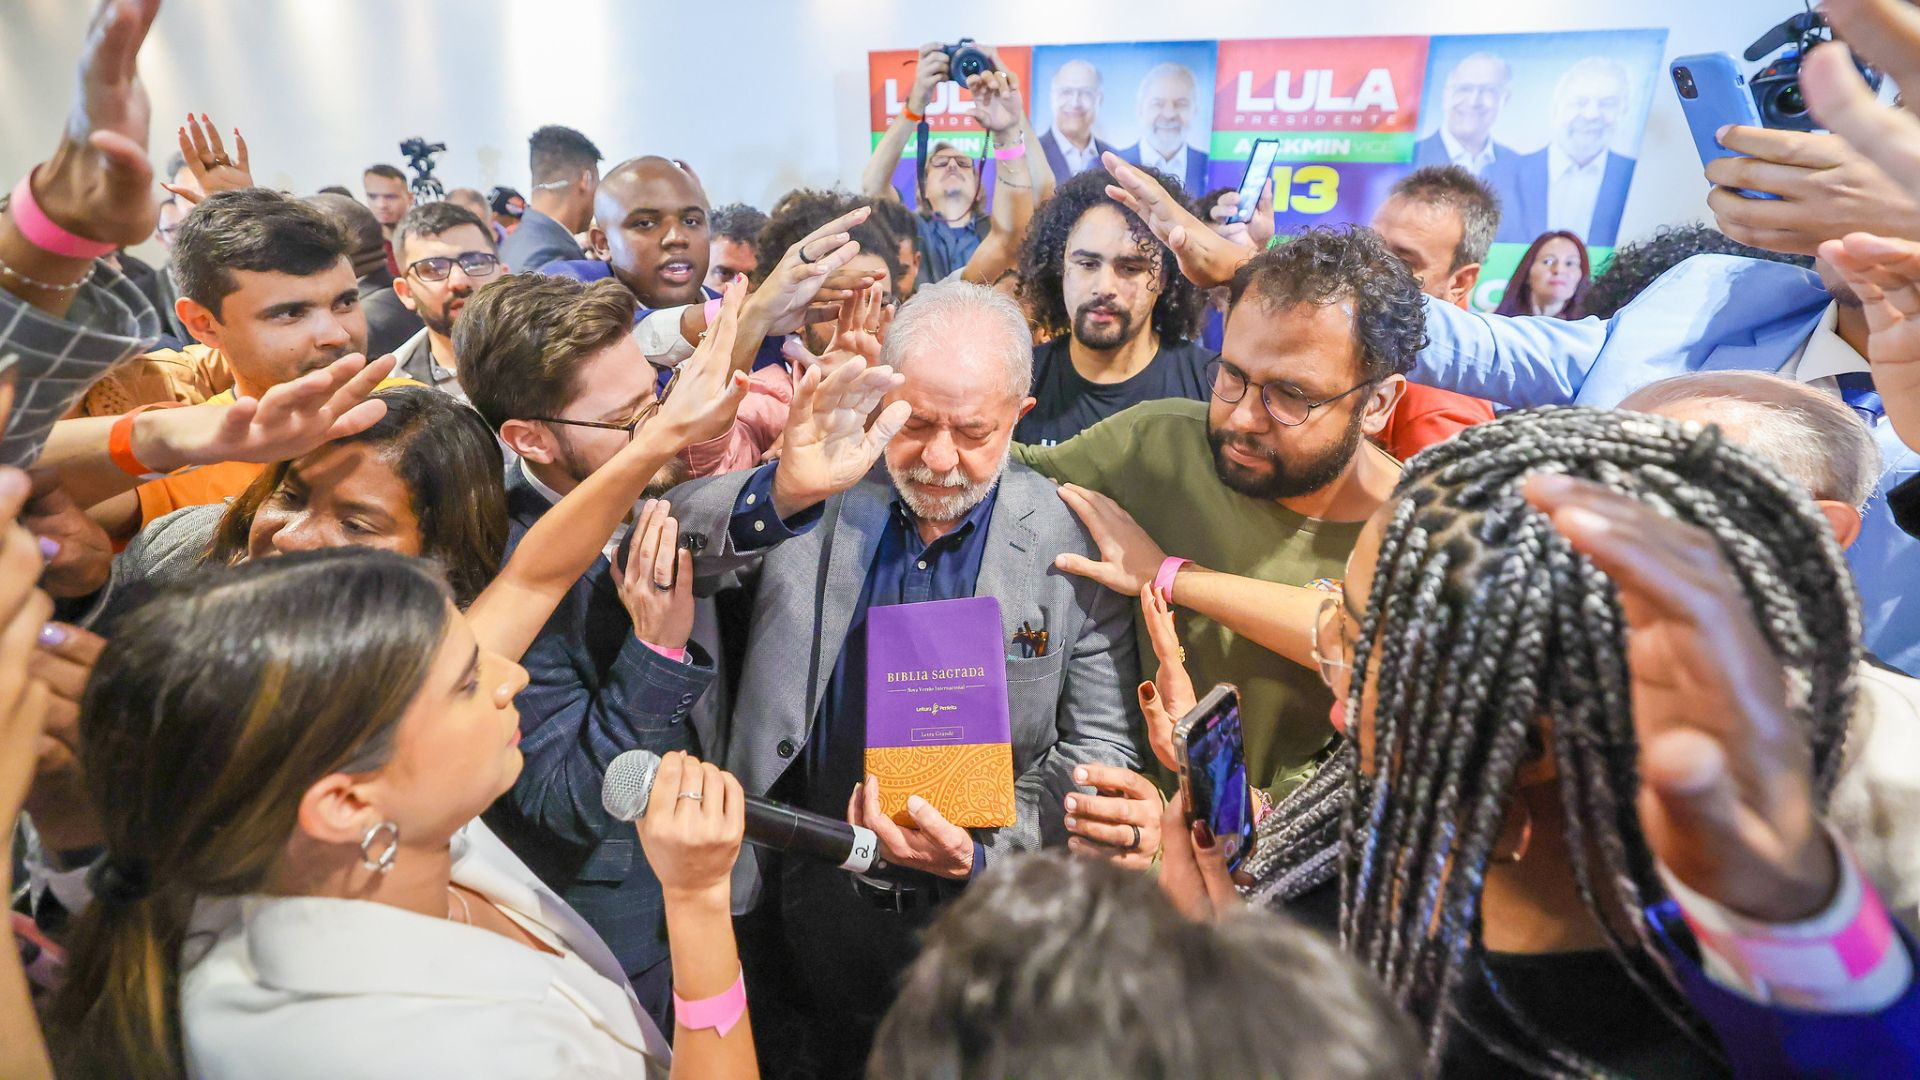 Bispo Edir Macedo defende perdão a Lula e diz que vitória foi 'vontade de  Deus